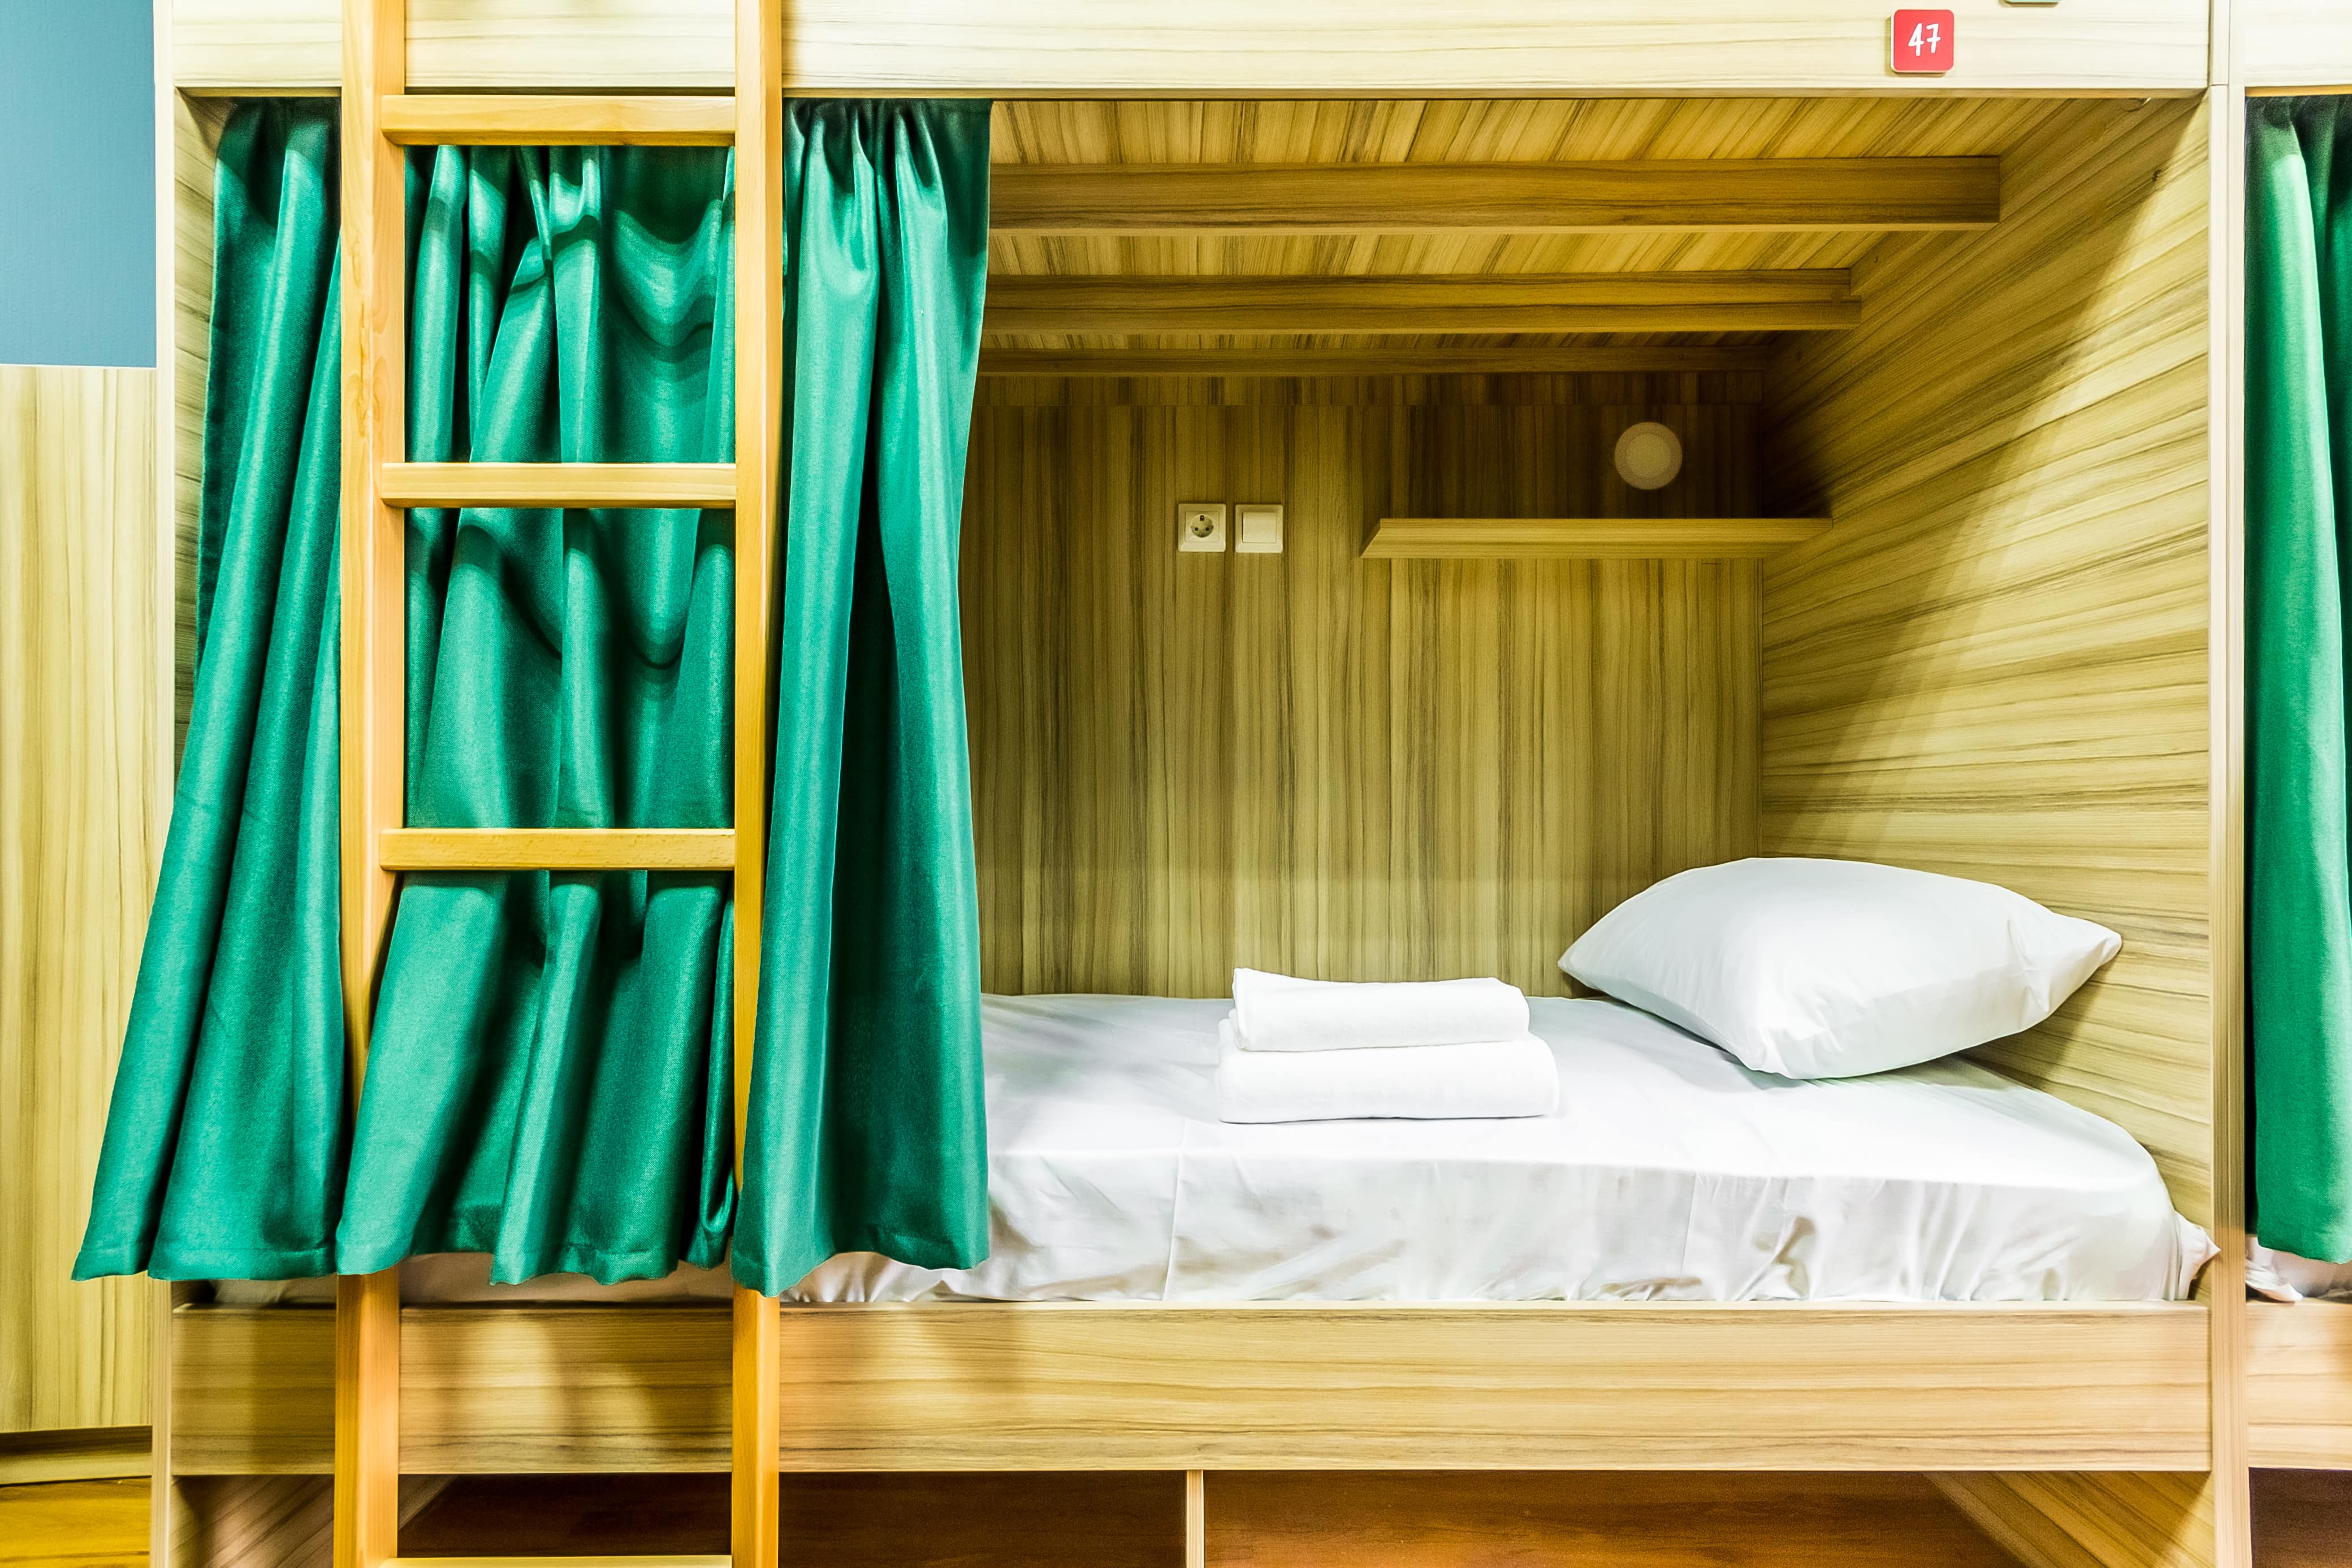 Кровать - деревянная, шторки - перламутровые зеленые.